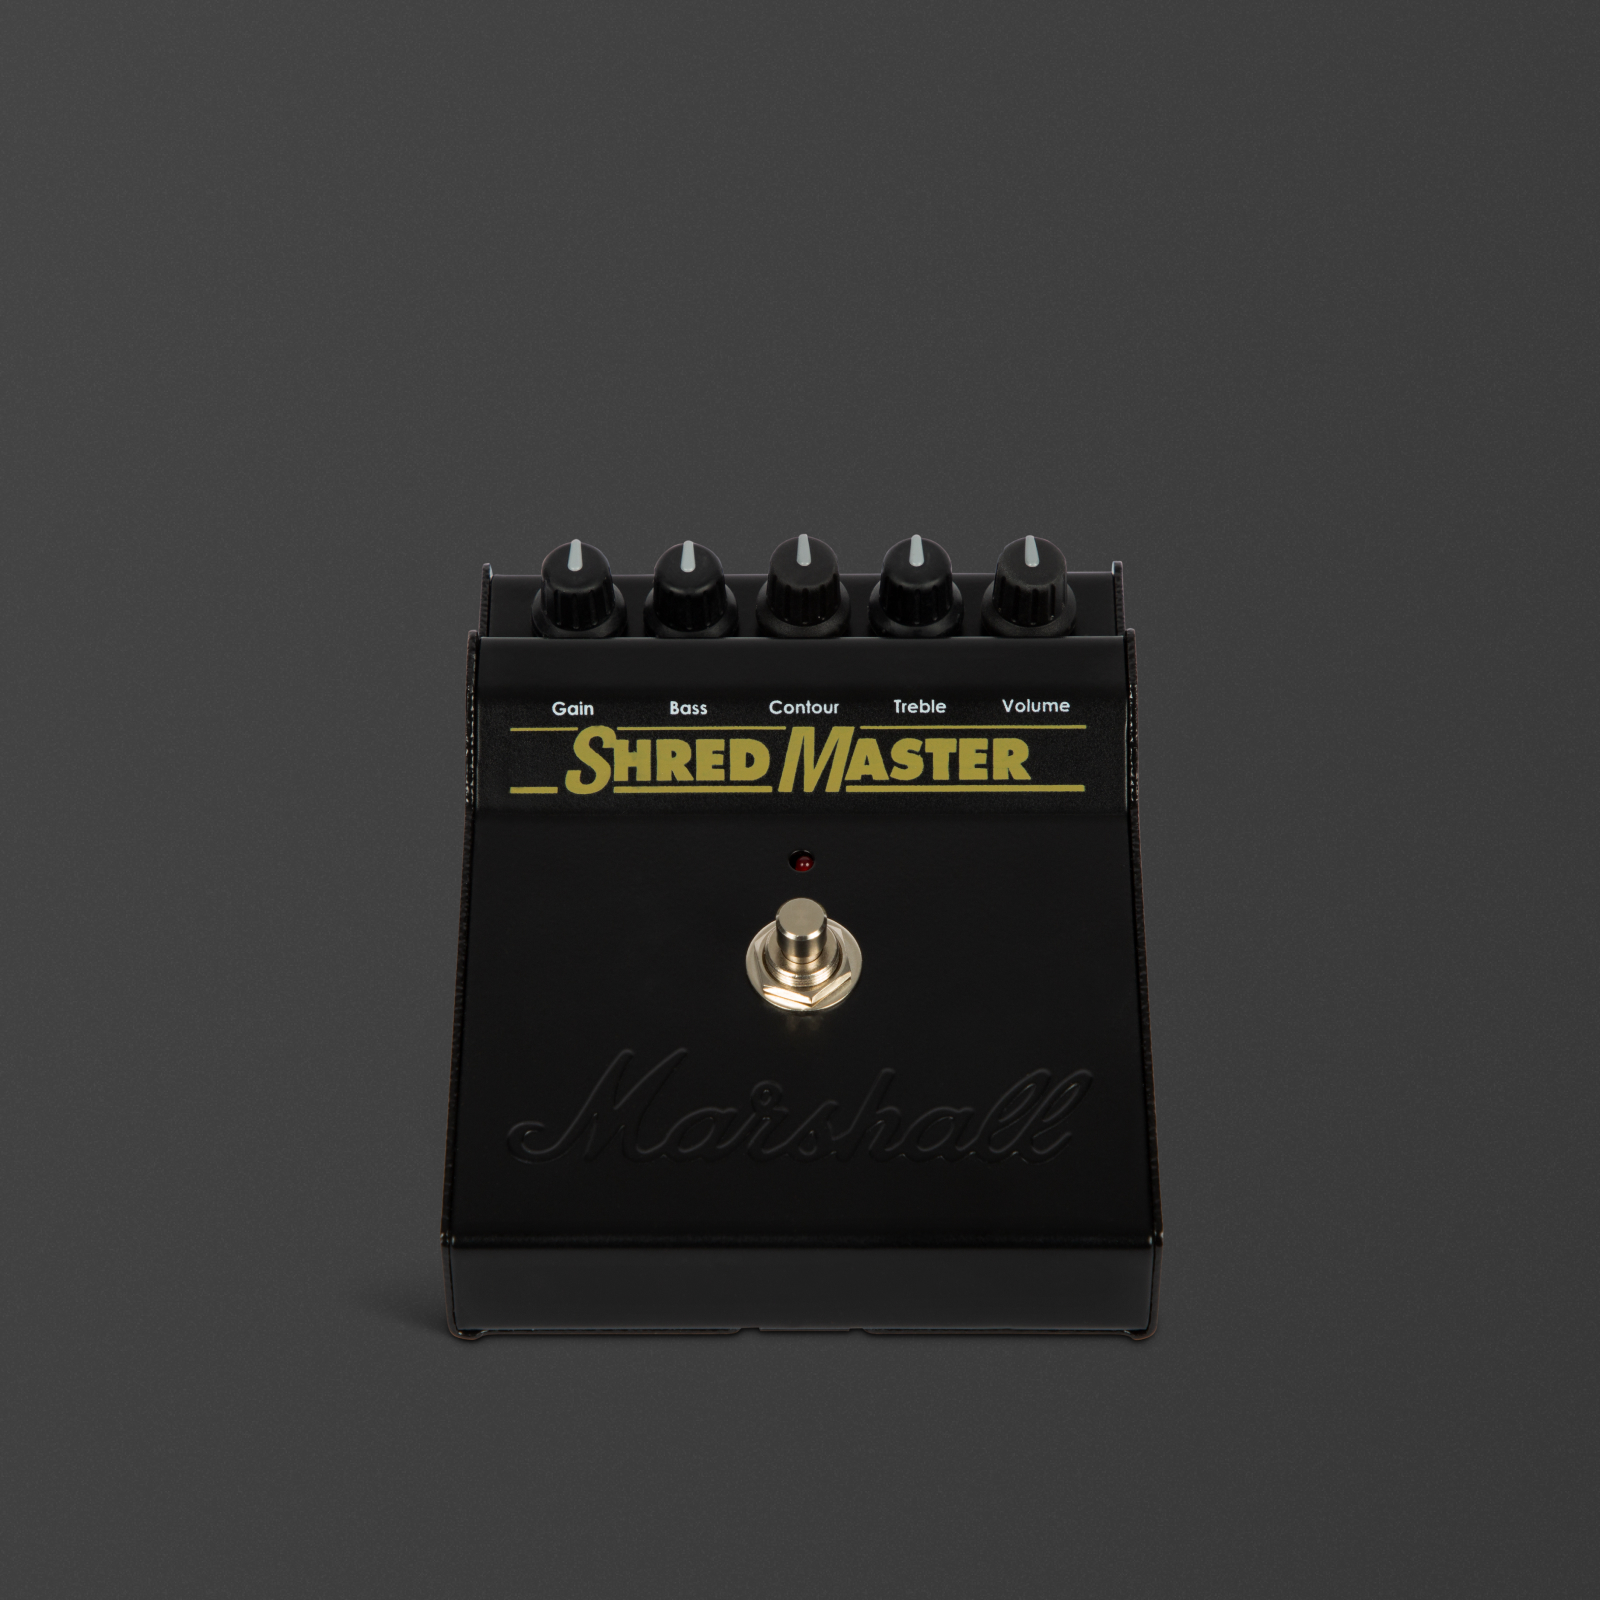 オリジナルの象徴的なサウンドを再現したブラック・シュレッドマスター・エフェクター。